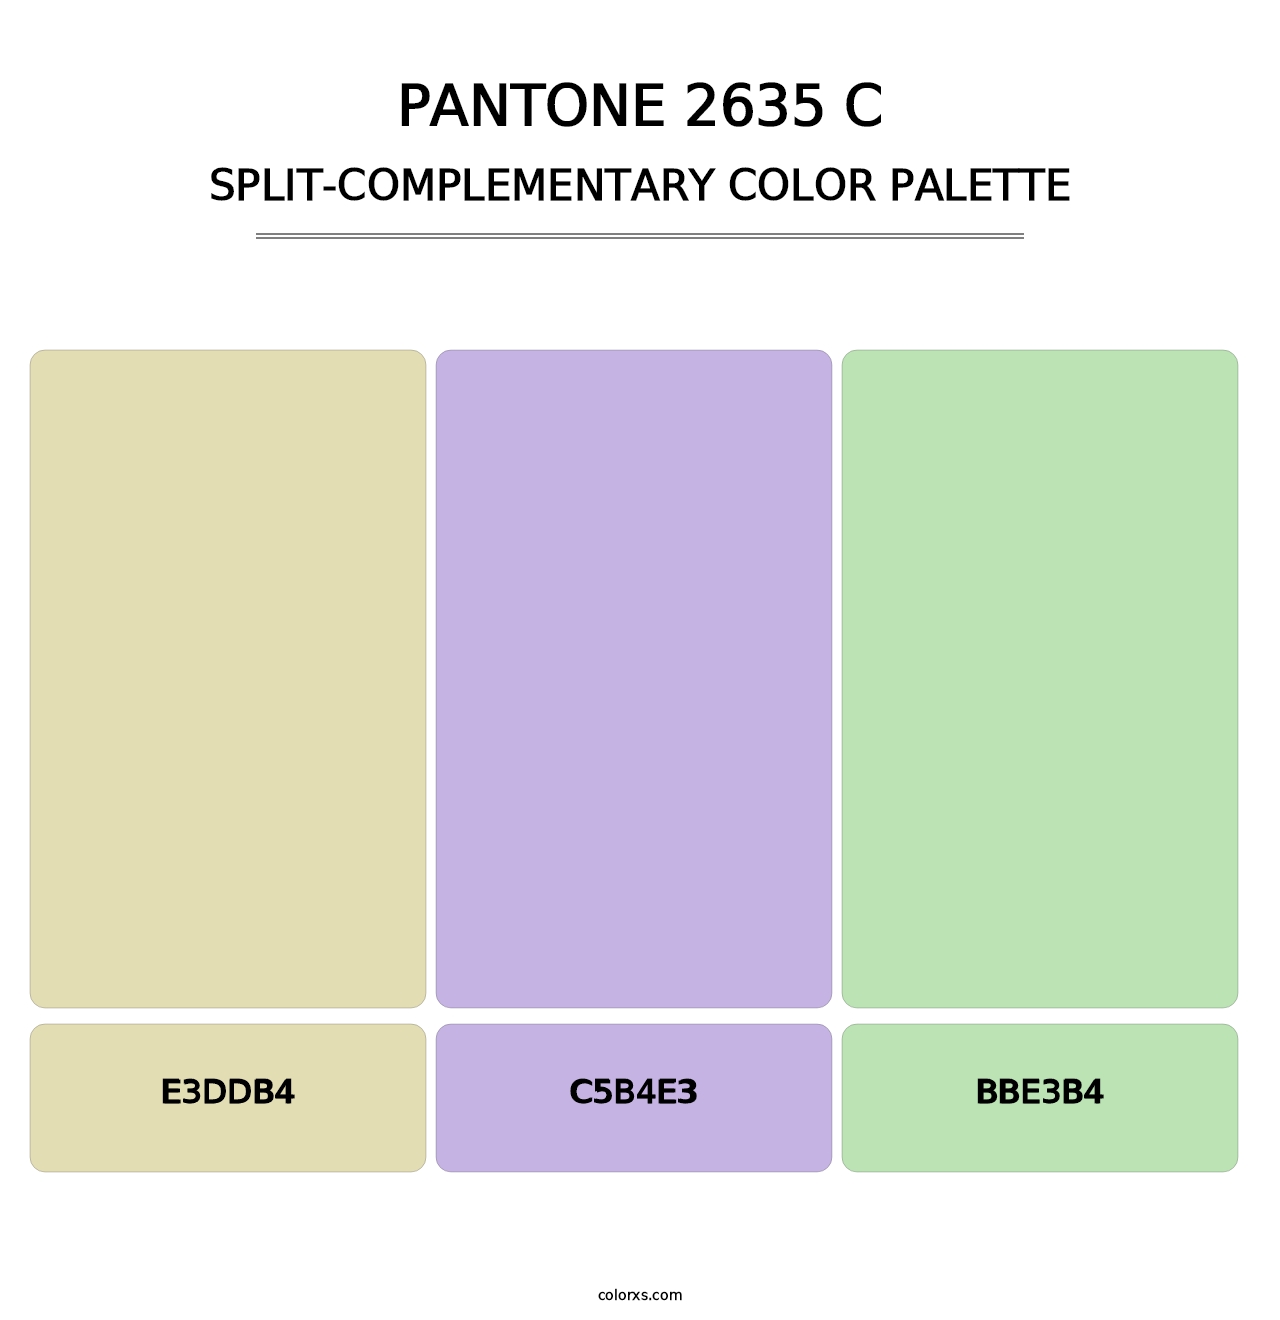 PANTONE 2635 C - Split-Complementary Color Palette